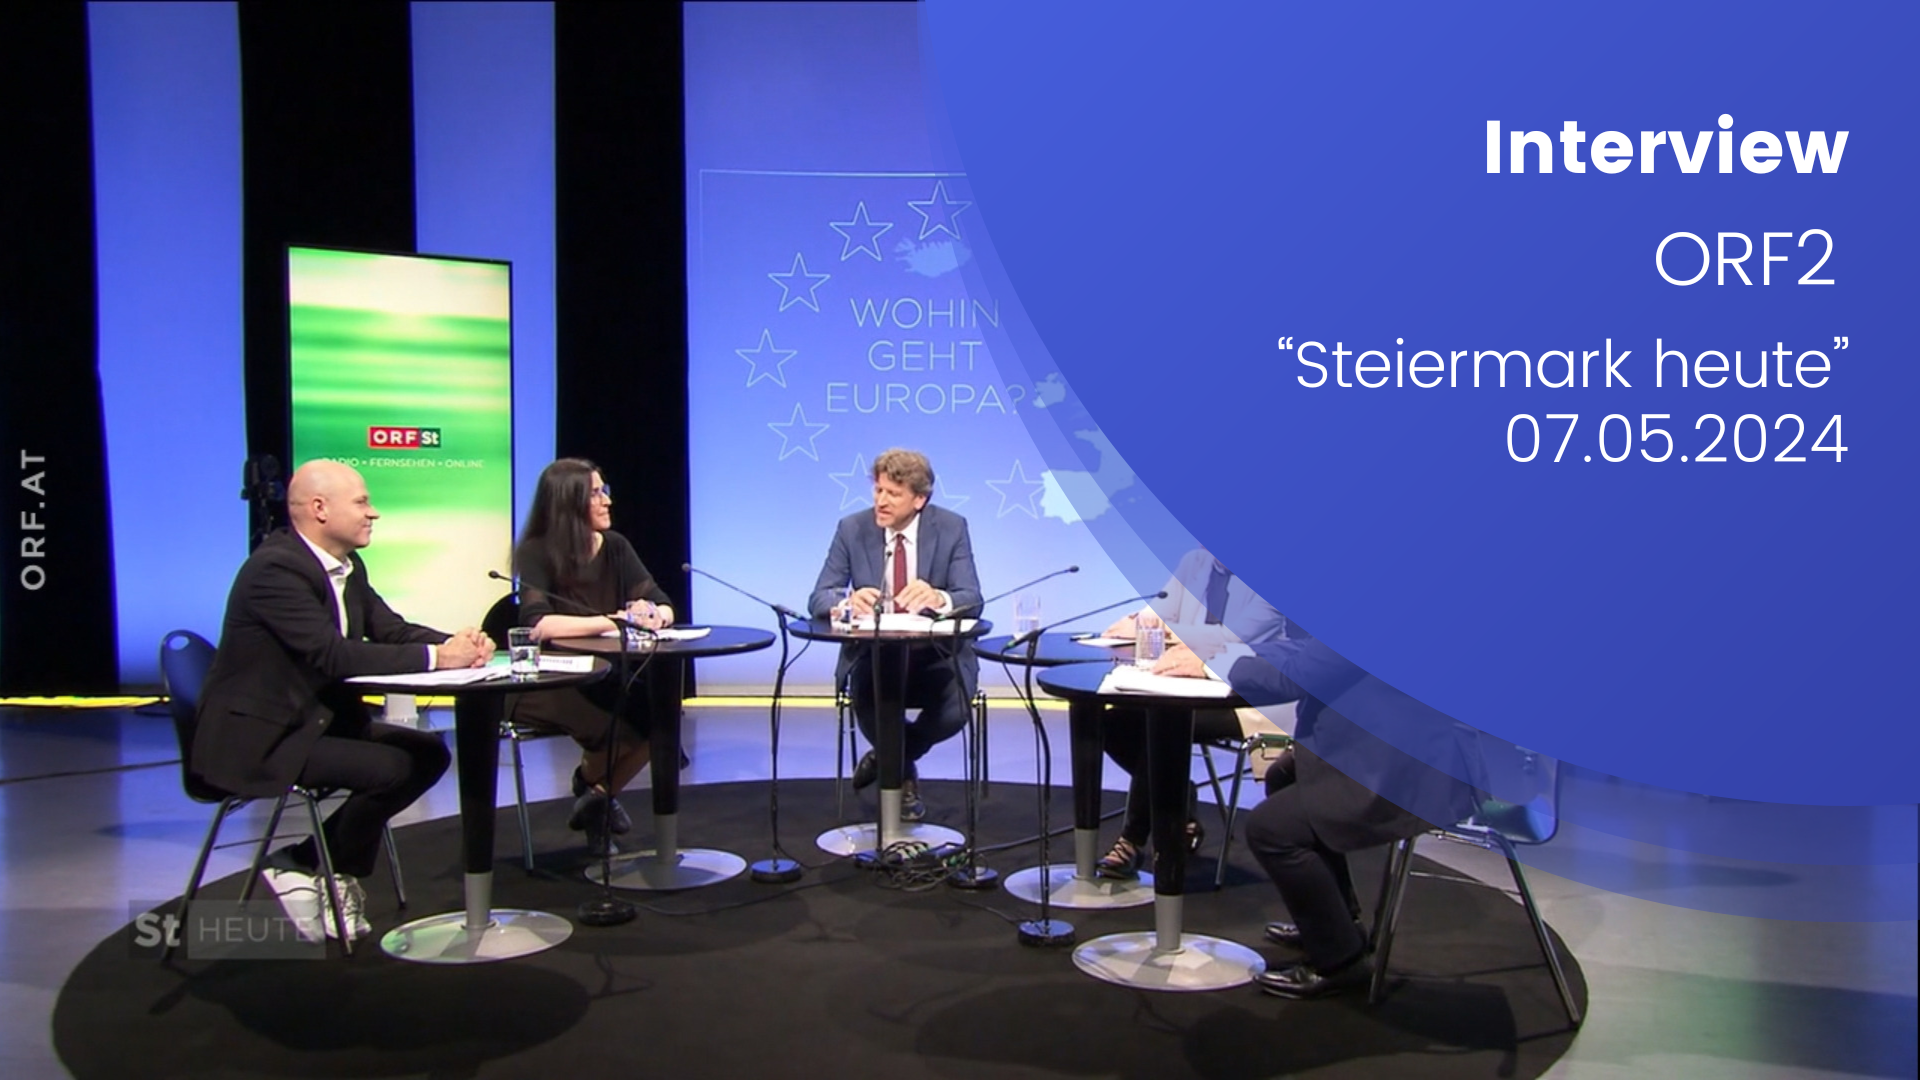 Paul Schmidt ist in Steiermark heute in einer Diskussionsrunde zu sehen. Die Panel Diskutant:innen sitzen um einen Tisch, im Hintergrund ist ein digitaler Banner mit der STeiermark heute Aufschrift und grünem Hintergrund. Rechts ist ein Text übergelegt auf blauem Hintergrund: Interview ORF 2, Steiermark heute, 07.05.2024".